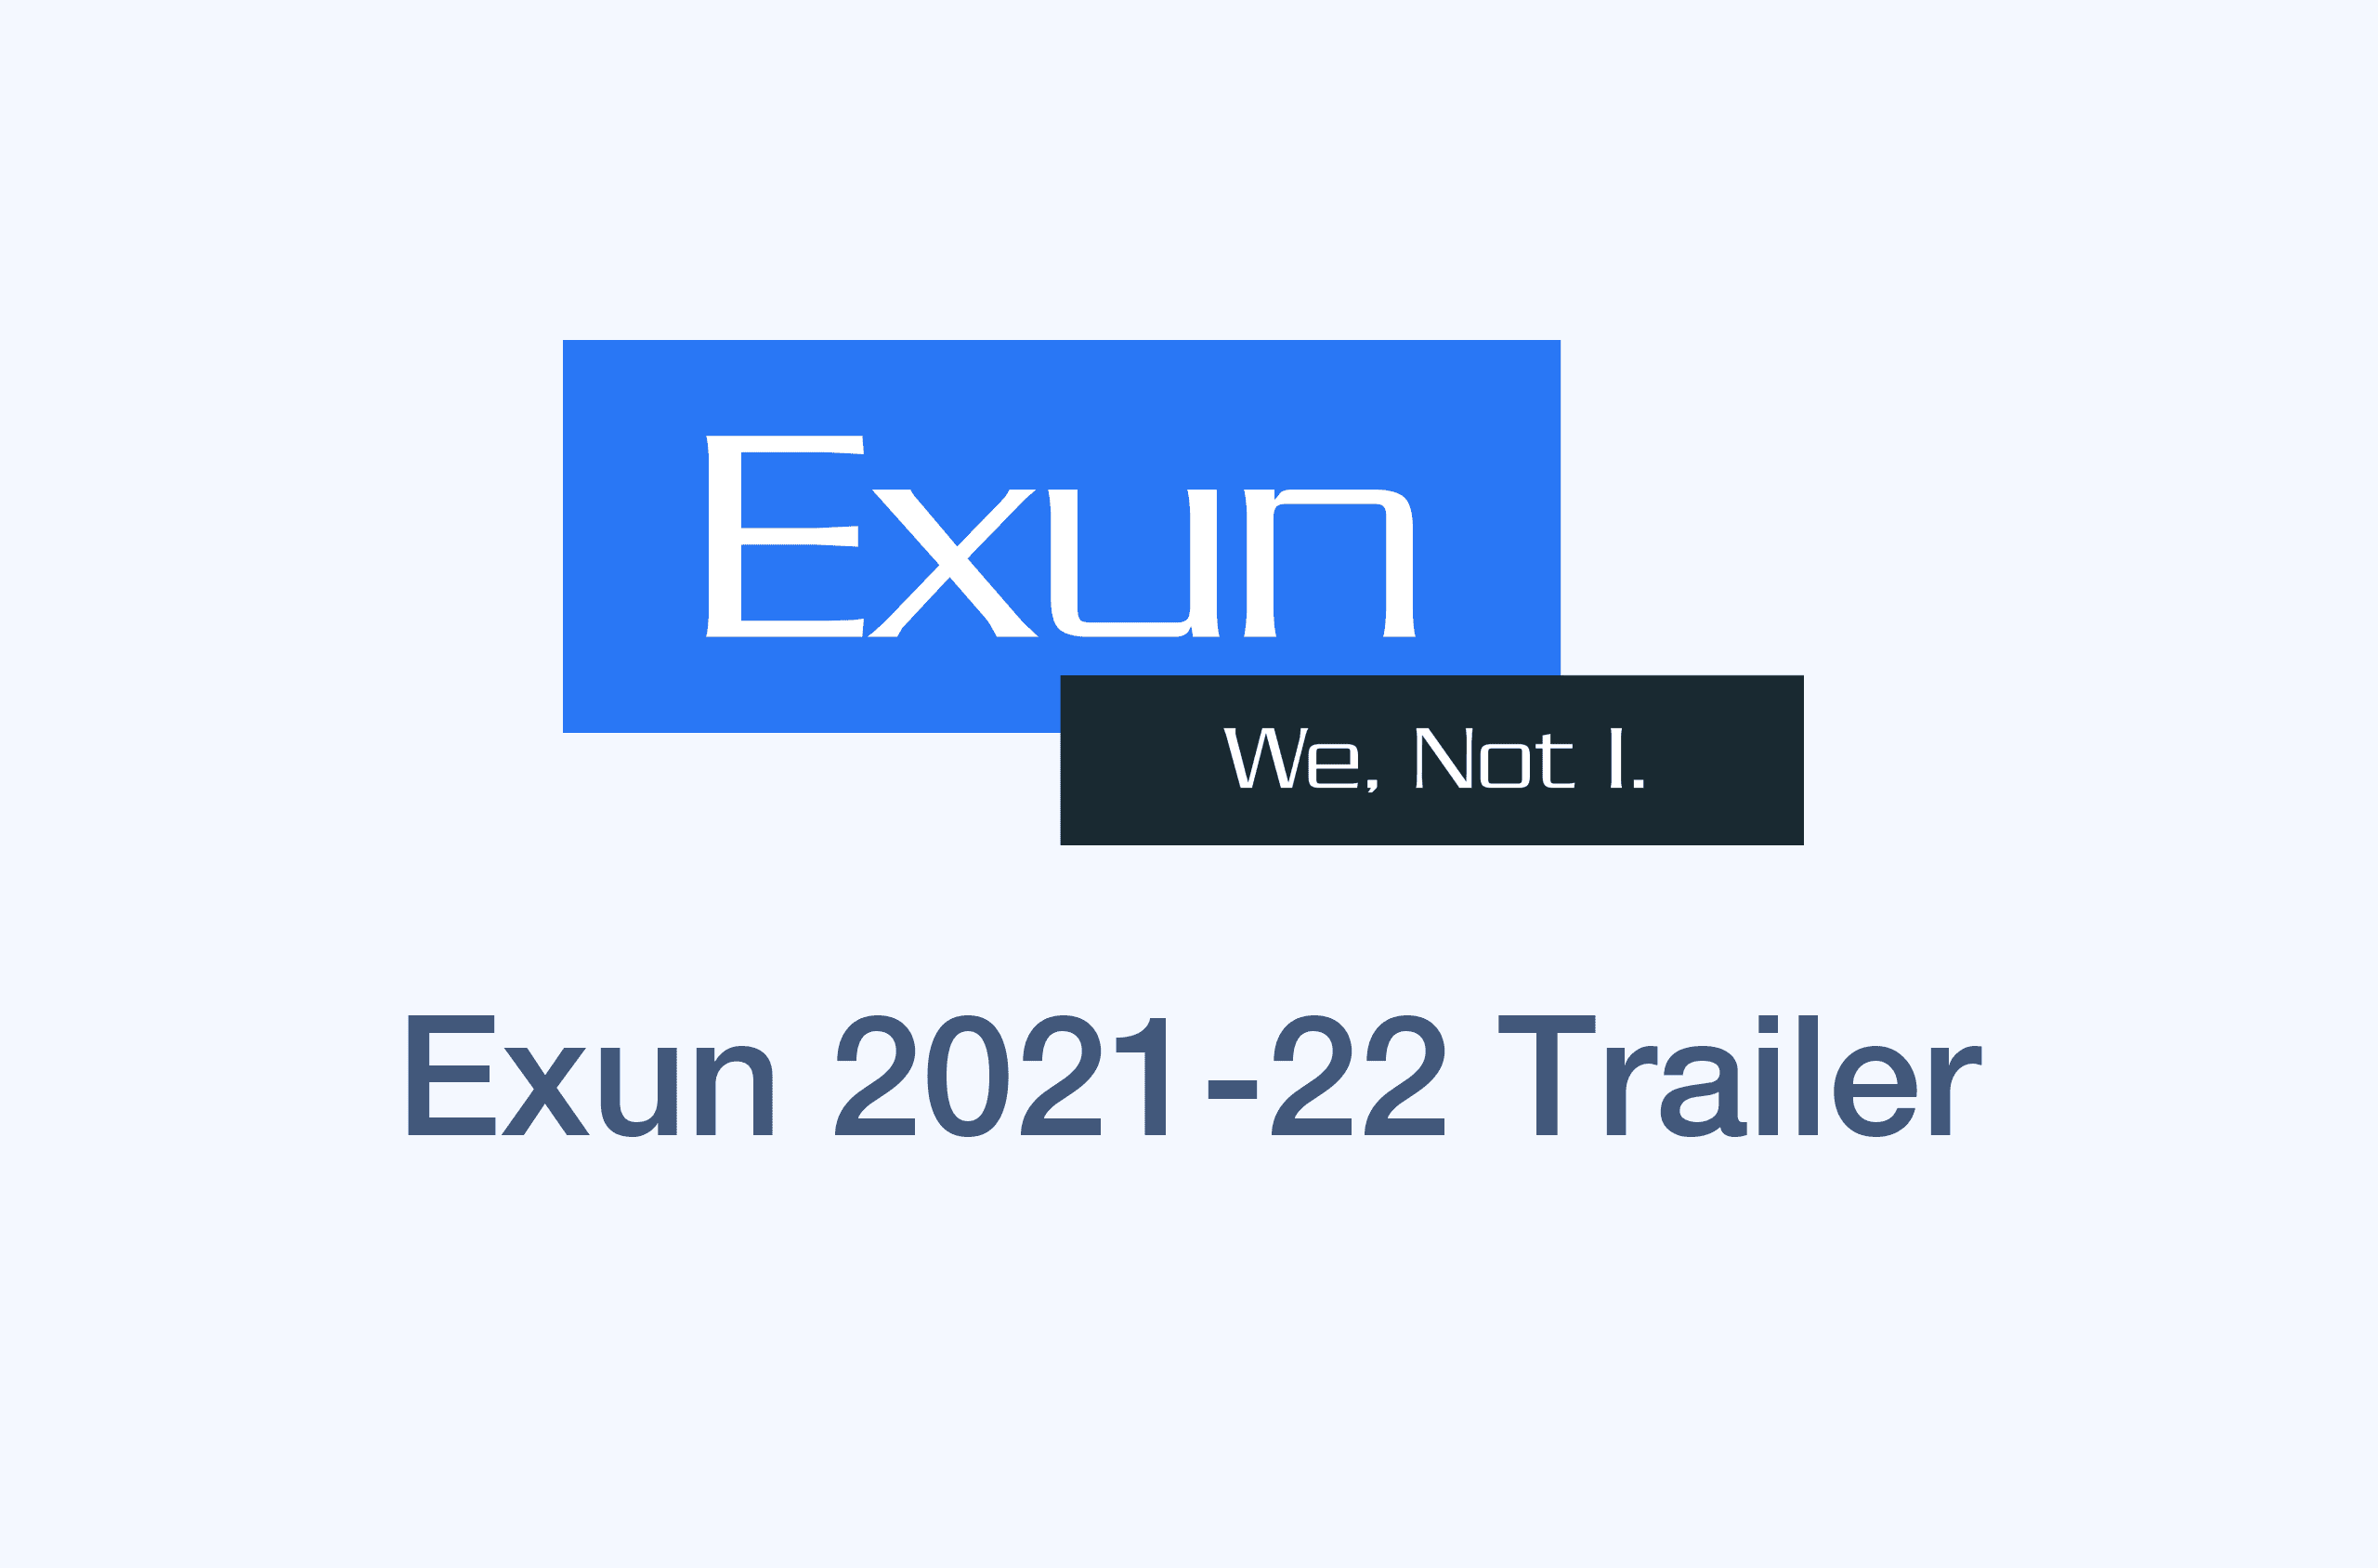 Exun 2021-22 Trailer's image